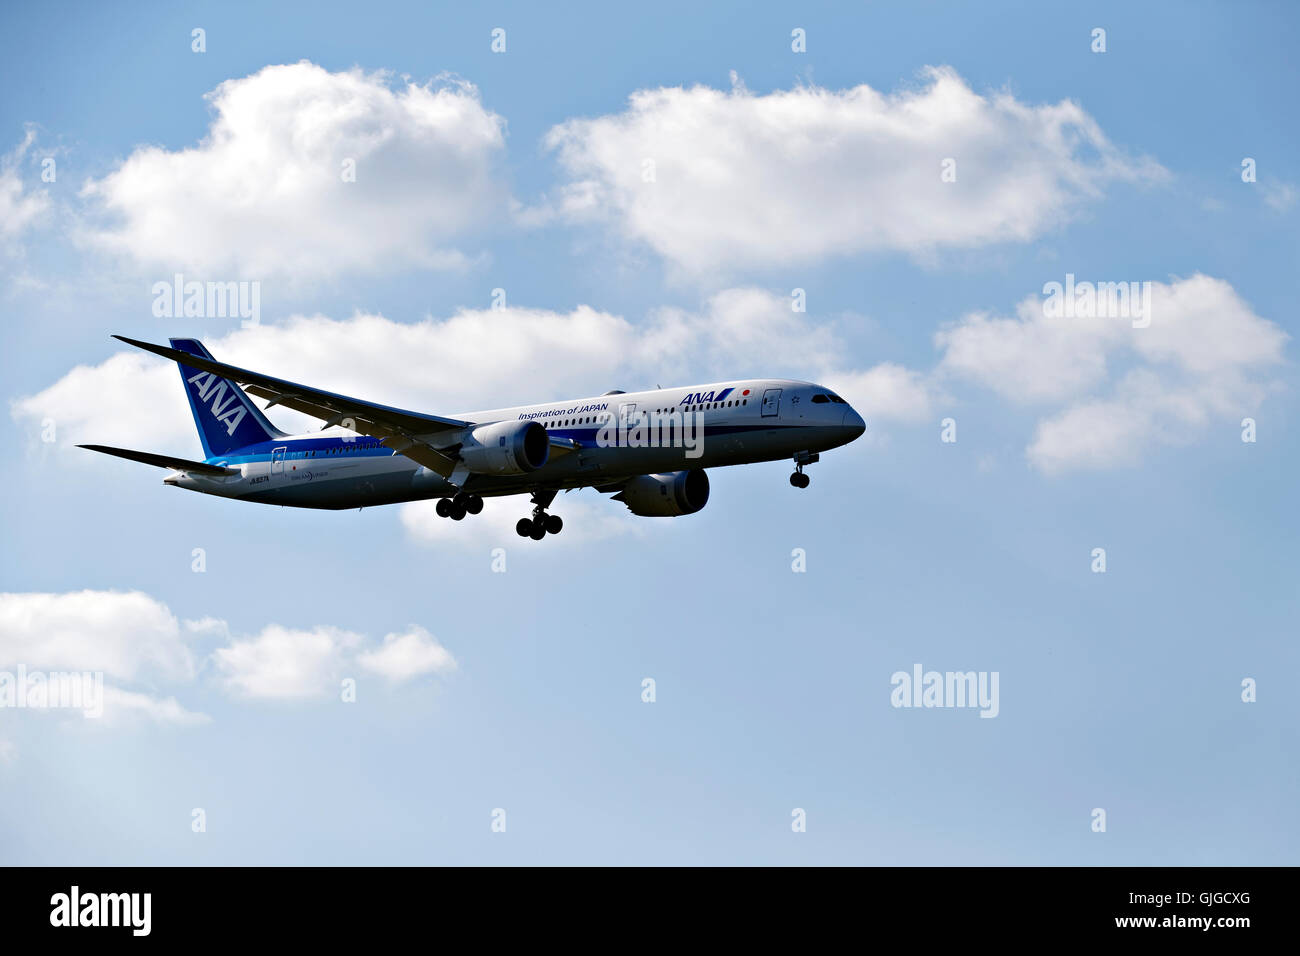 ANA Japan airlines Dream liner sur l'approche à l'atterrissage à l'aéroport Franz Josef Strauss, Munich, Haute-Bavière, Allemagne, Europe. Banque D'Images